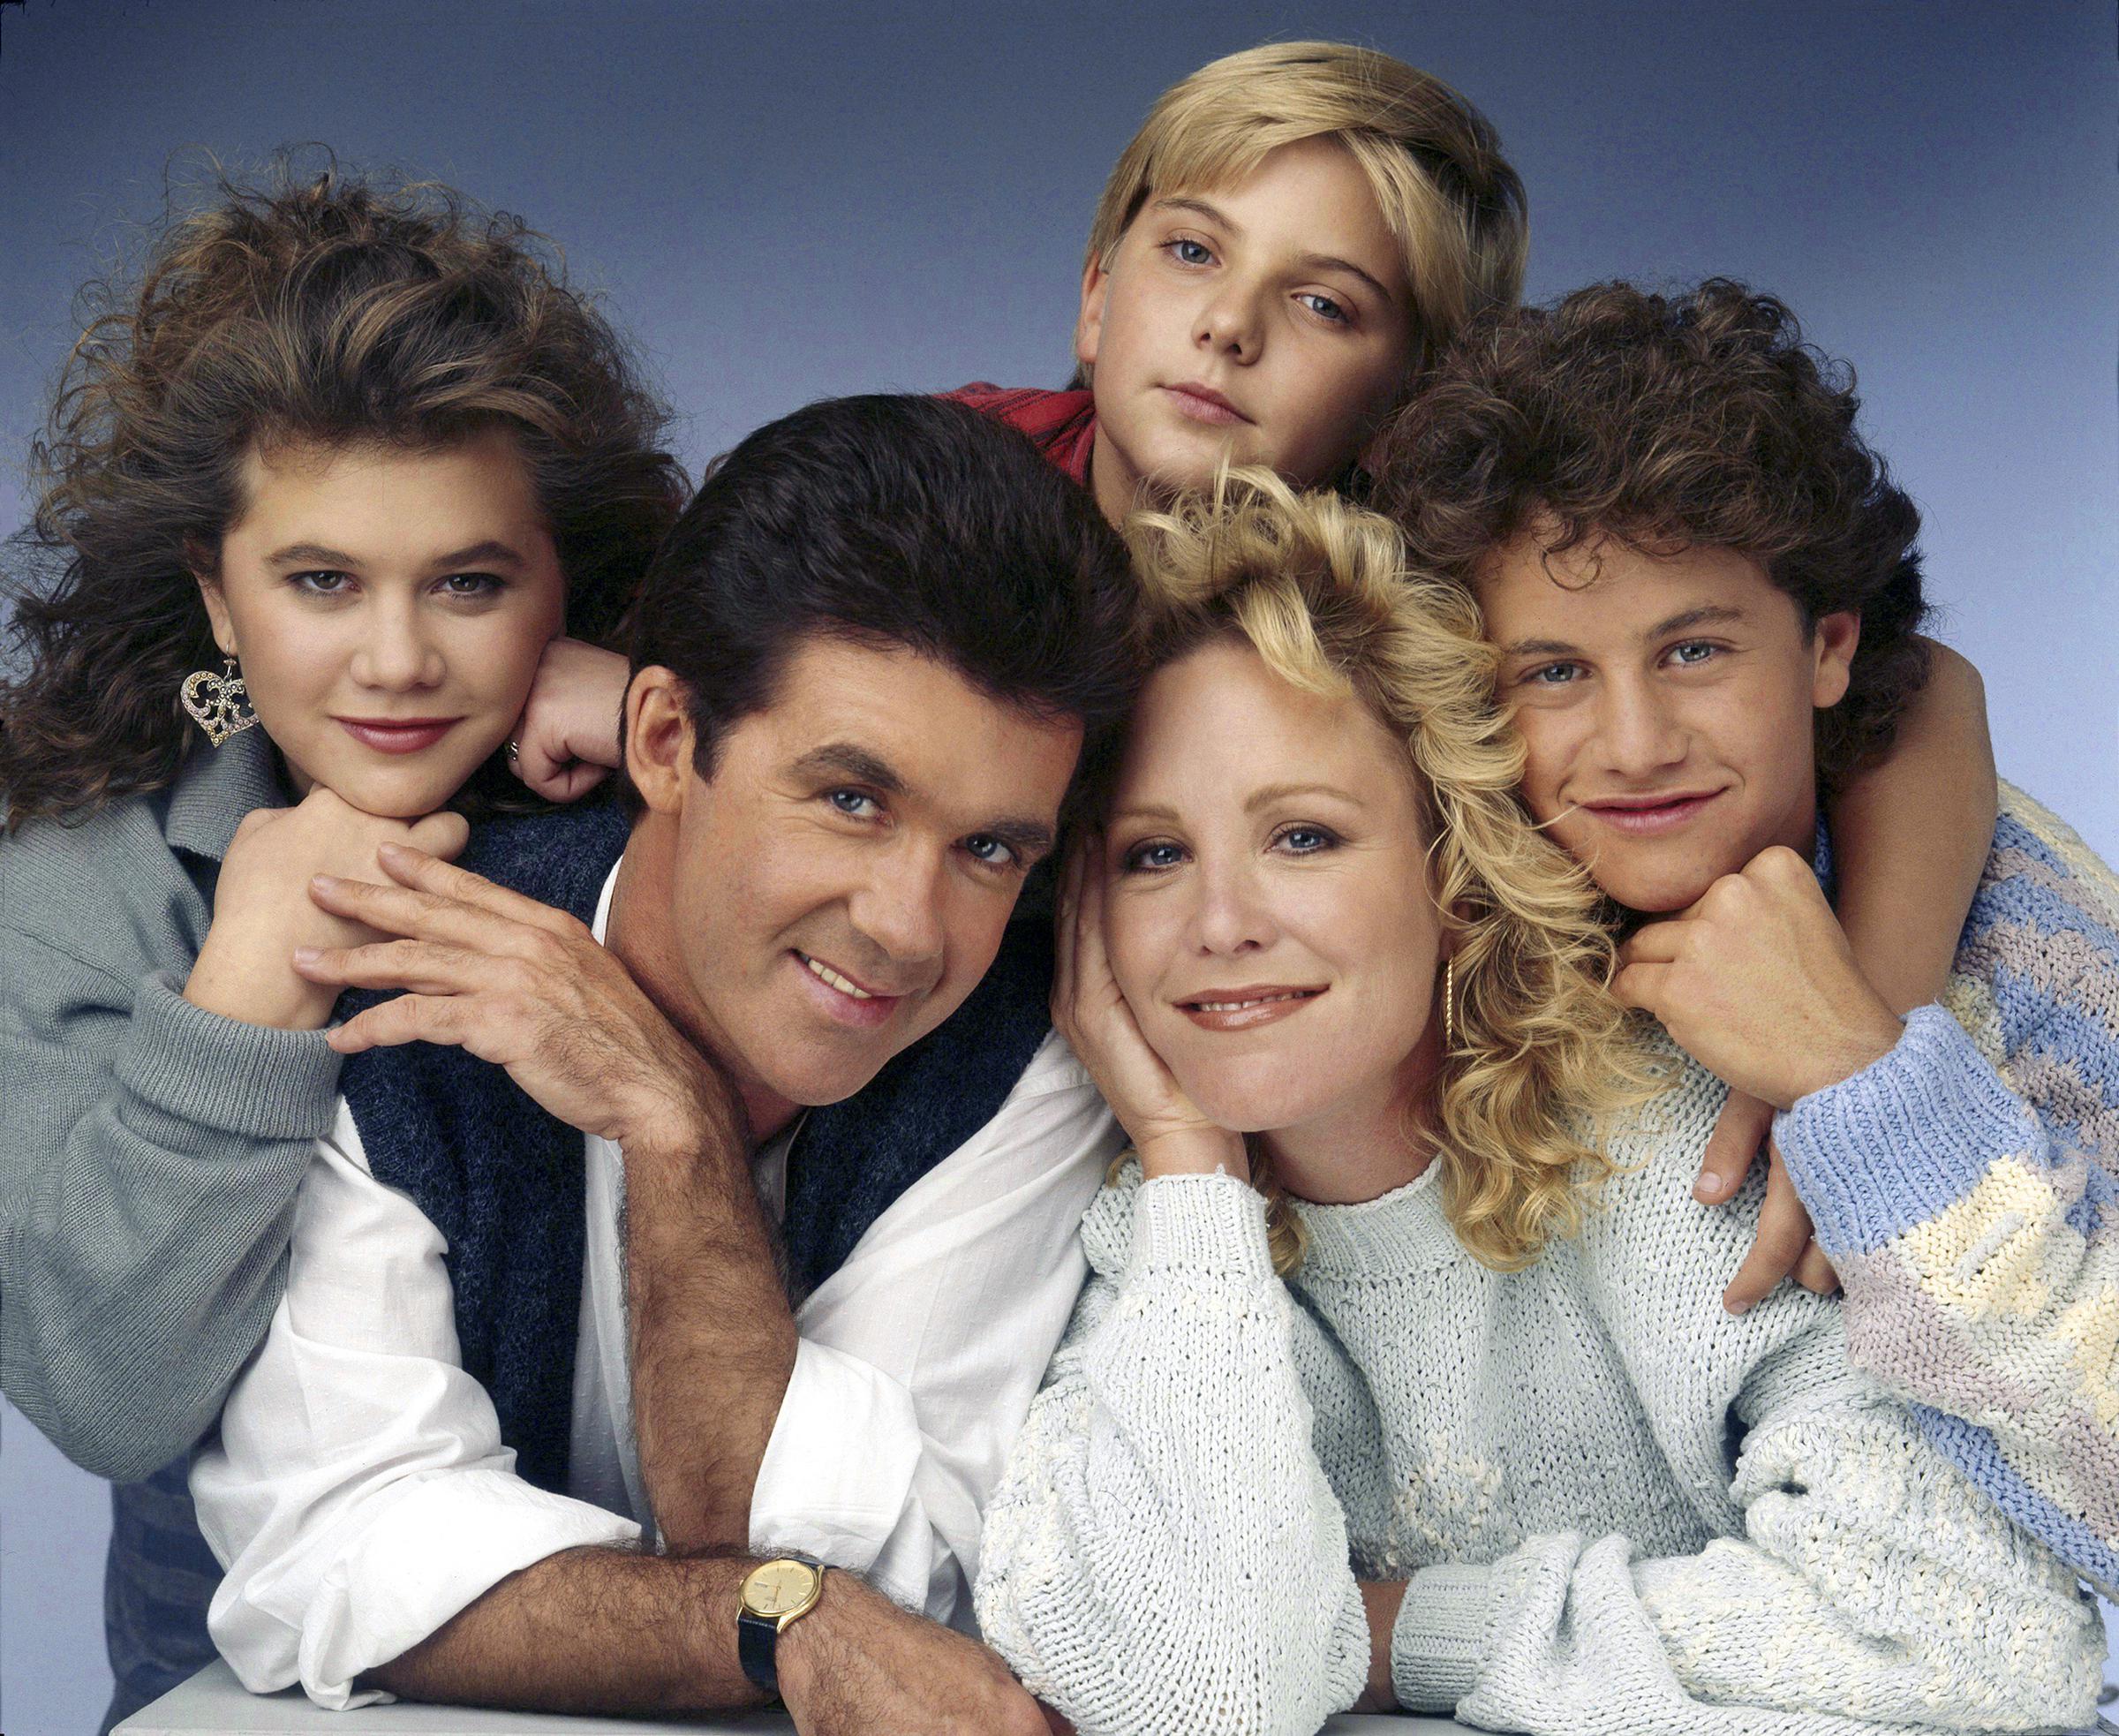 Tracey Gold, Kirk Cameron et le reste de l'équipe de la saison 3 de "Quoi de neuf docteur ?", vers 1987. | Source : Getty Images